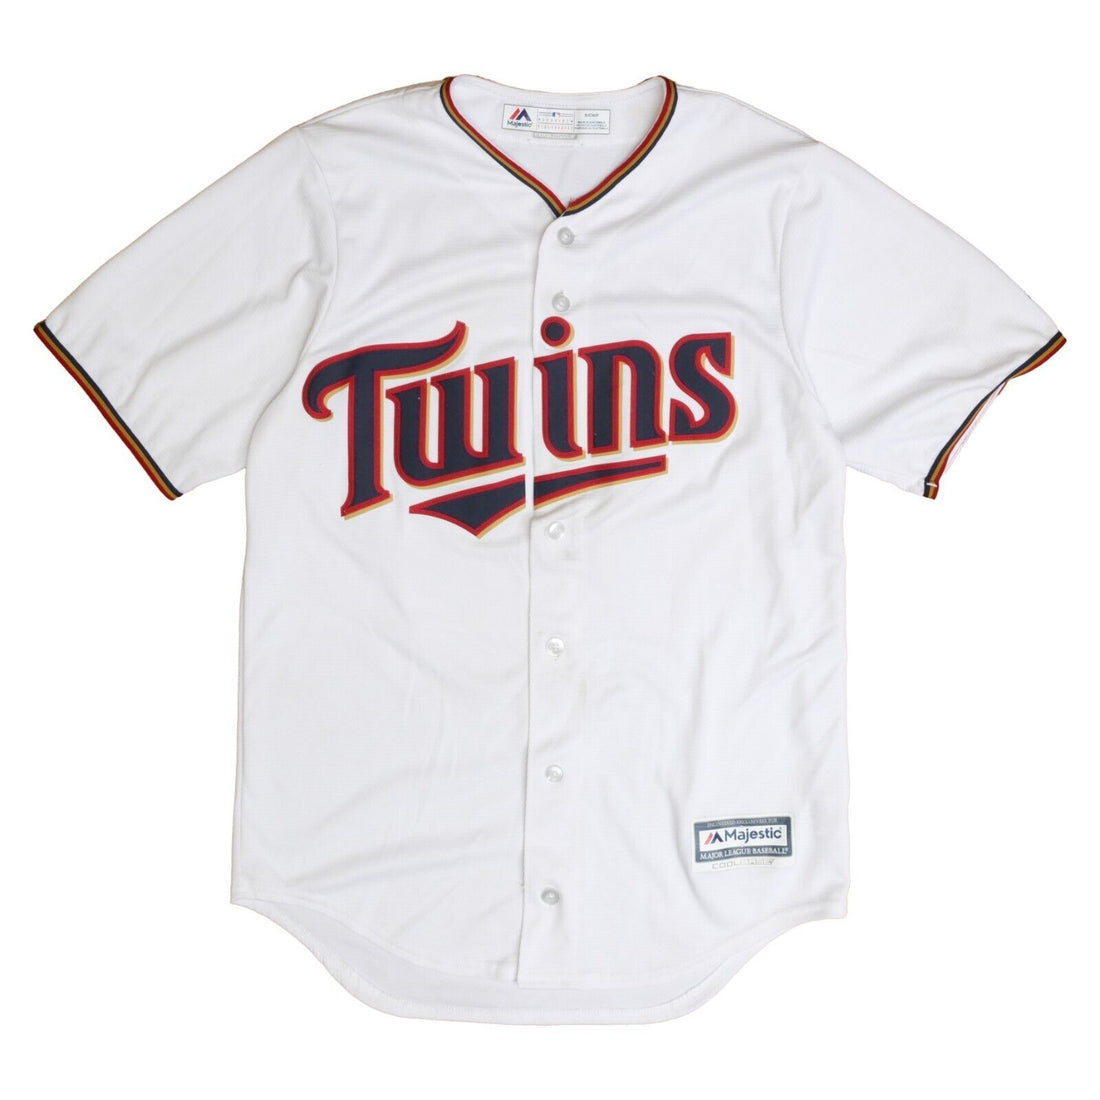 Minnesota Twins Jonathan Schoop Majestic Jersey Size Small White MLB